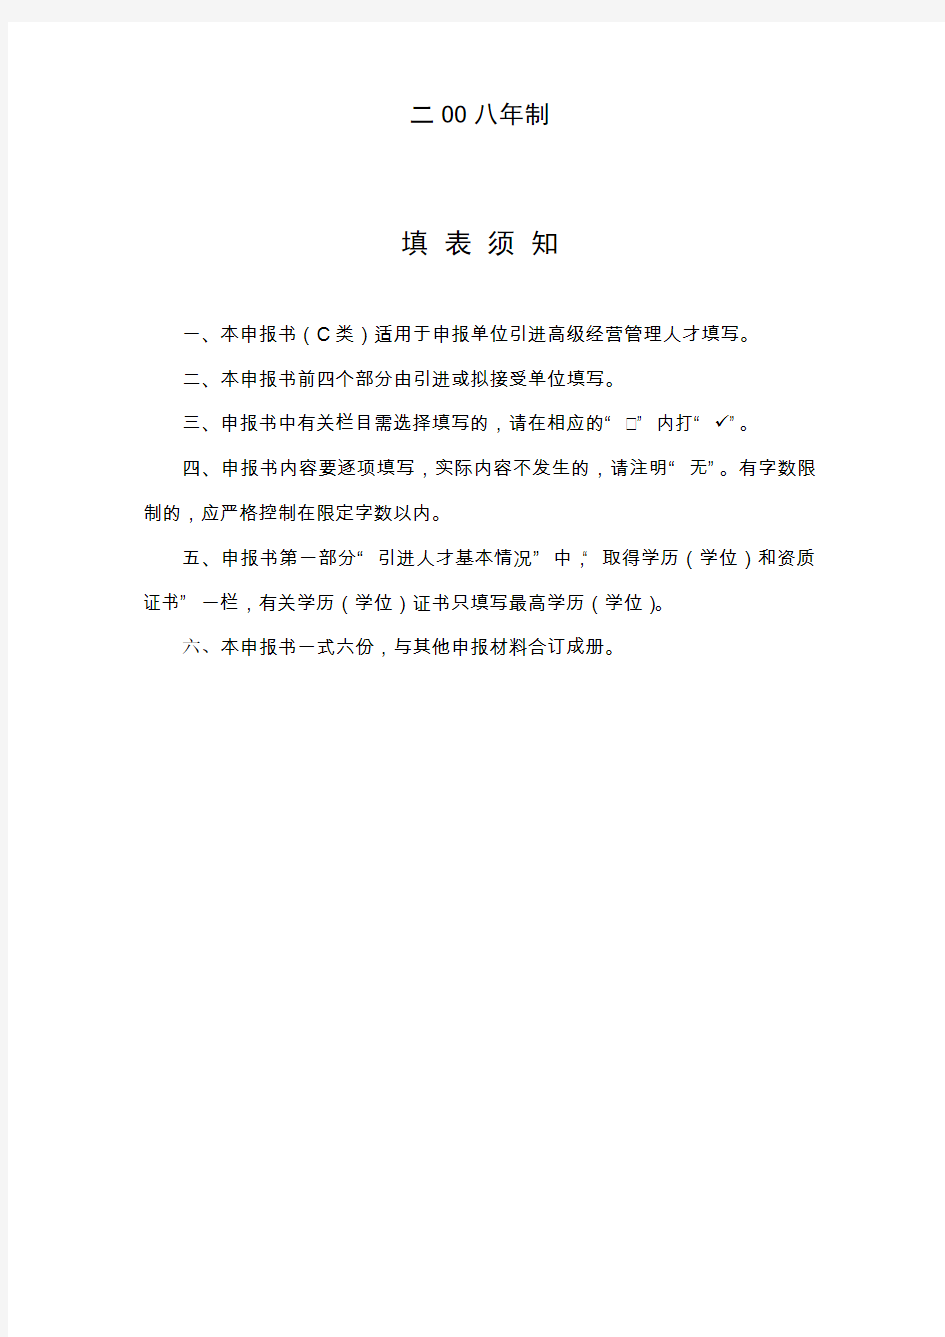 江苏新省高层次创新创业人才引进计划申报书(C类)